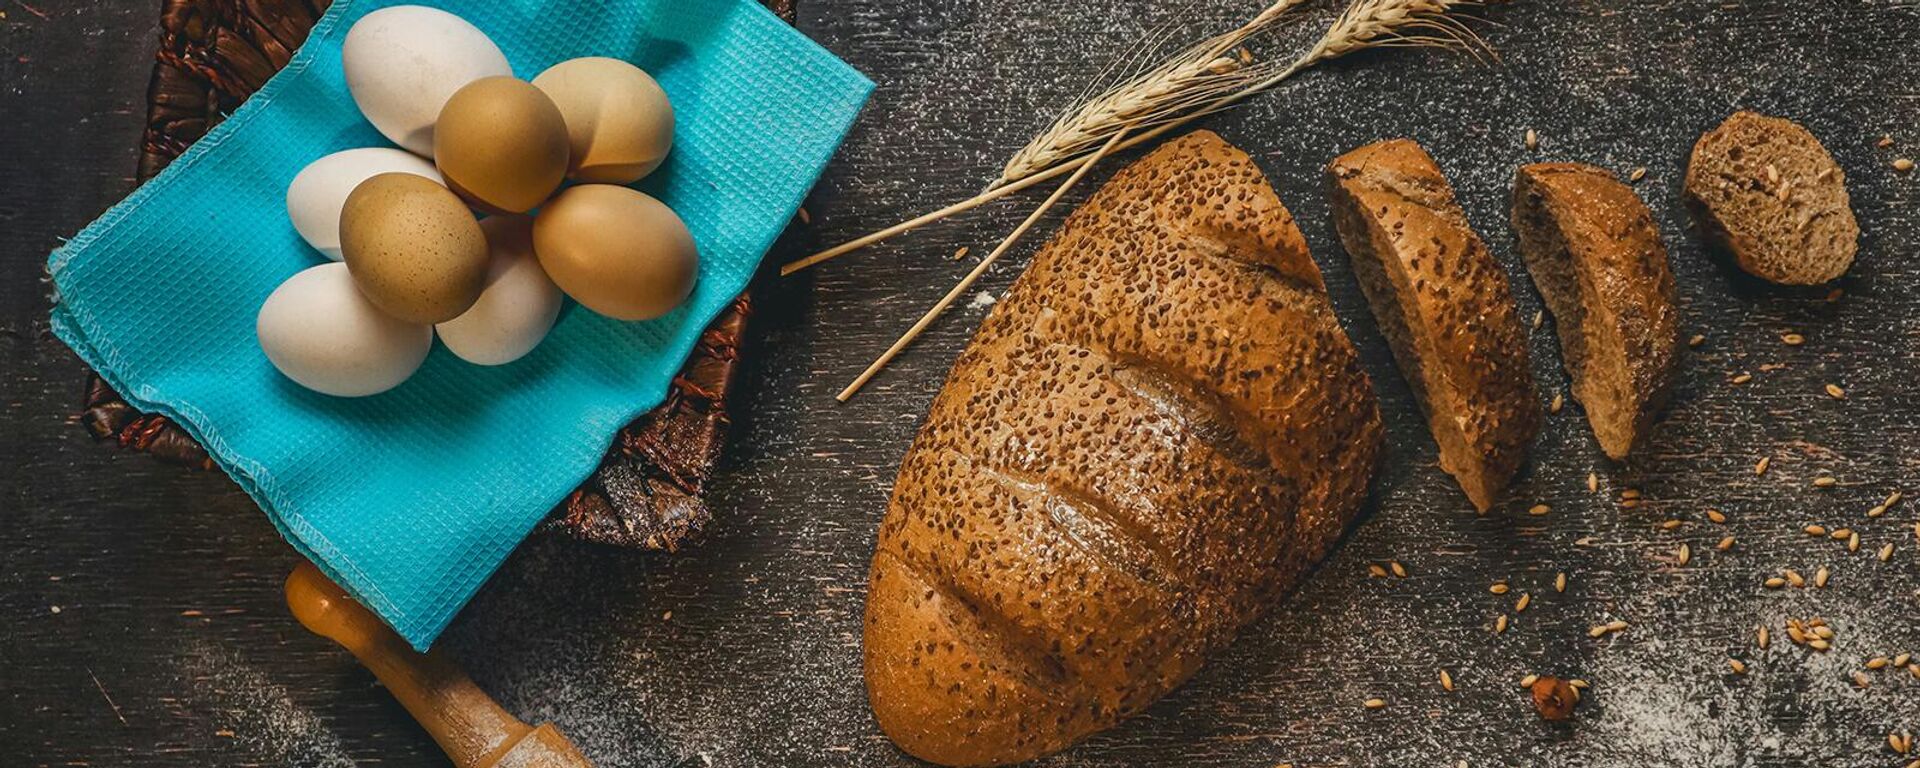 Нарезанный хлеб, яйца и молоко на столе - Sputnik Արմենիա, 1920, 25.01.2021